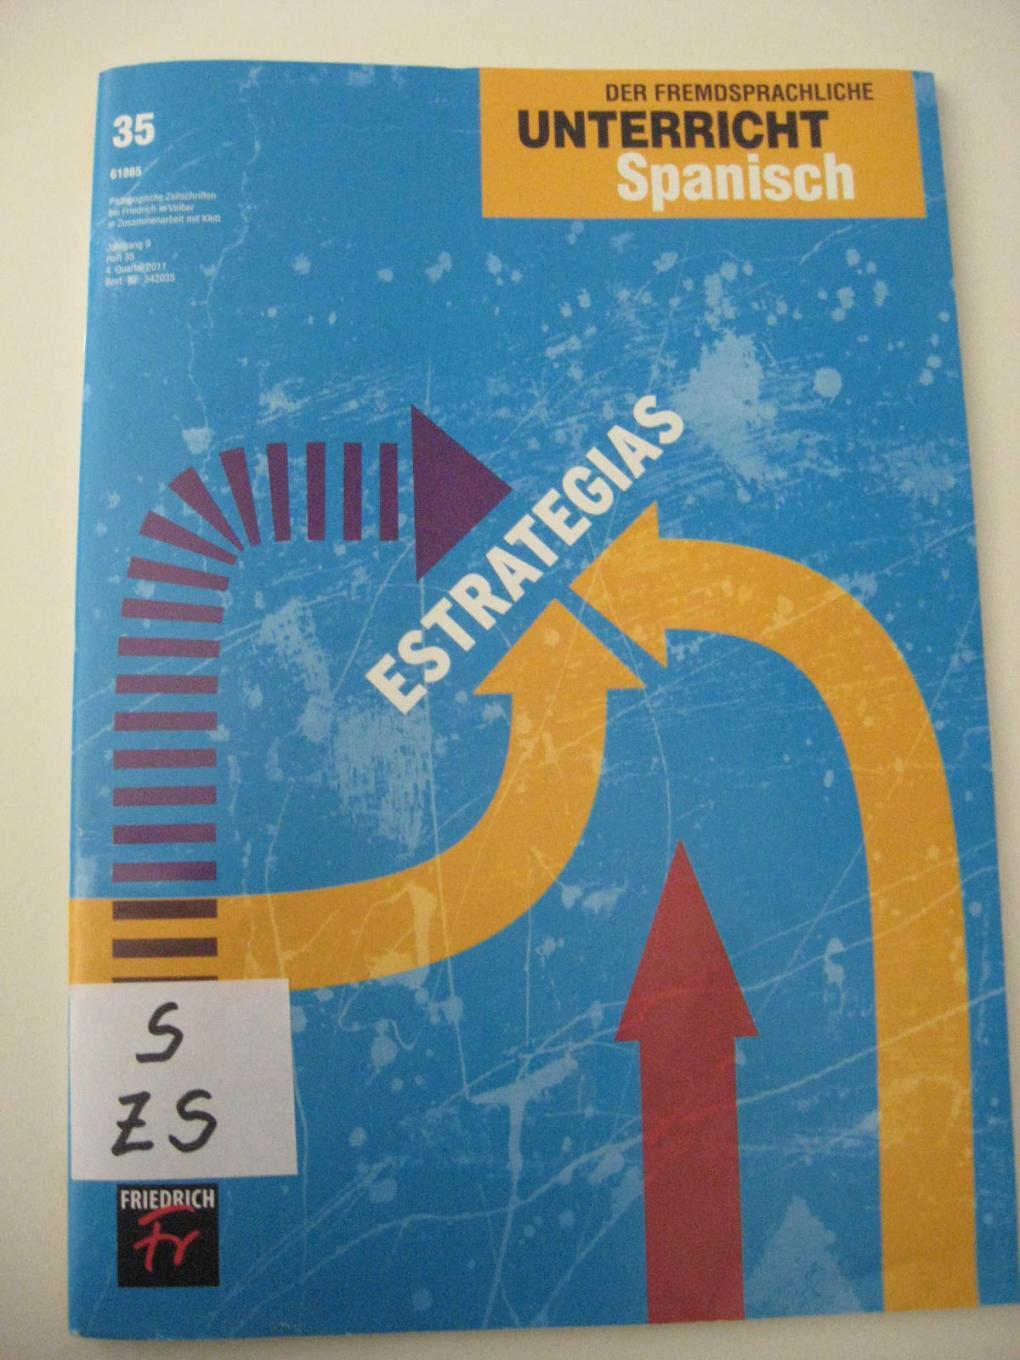 Der fremdsprachliche Unterricht Spanisch